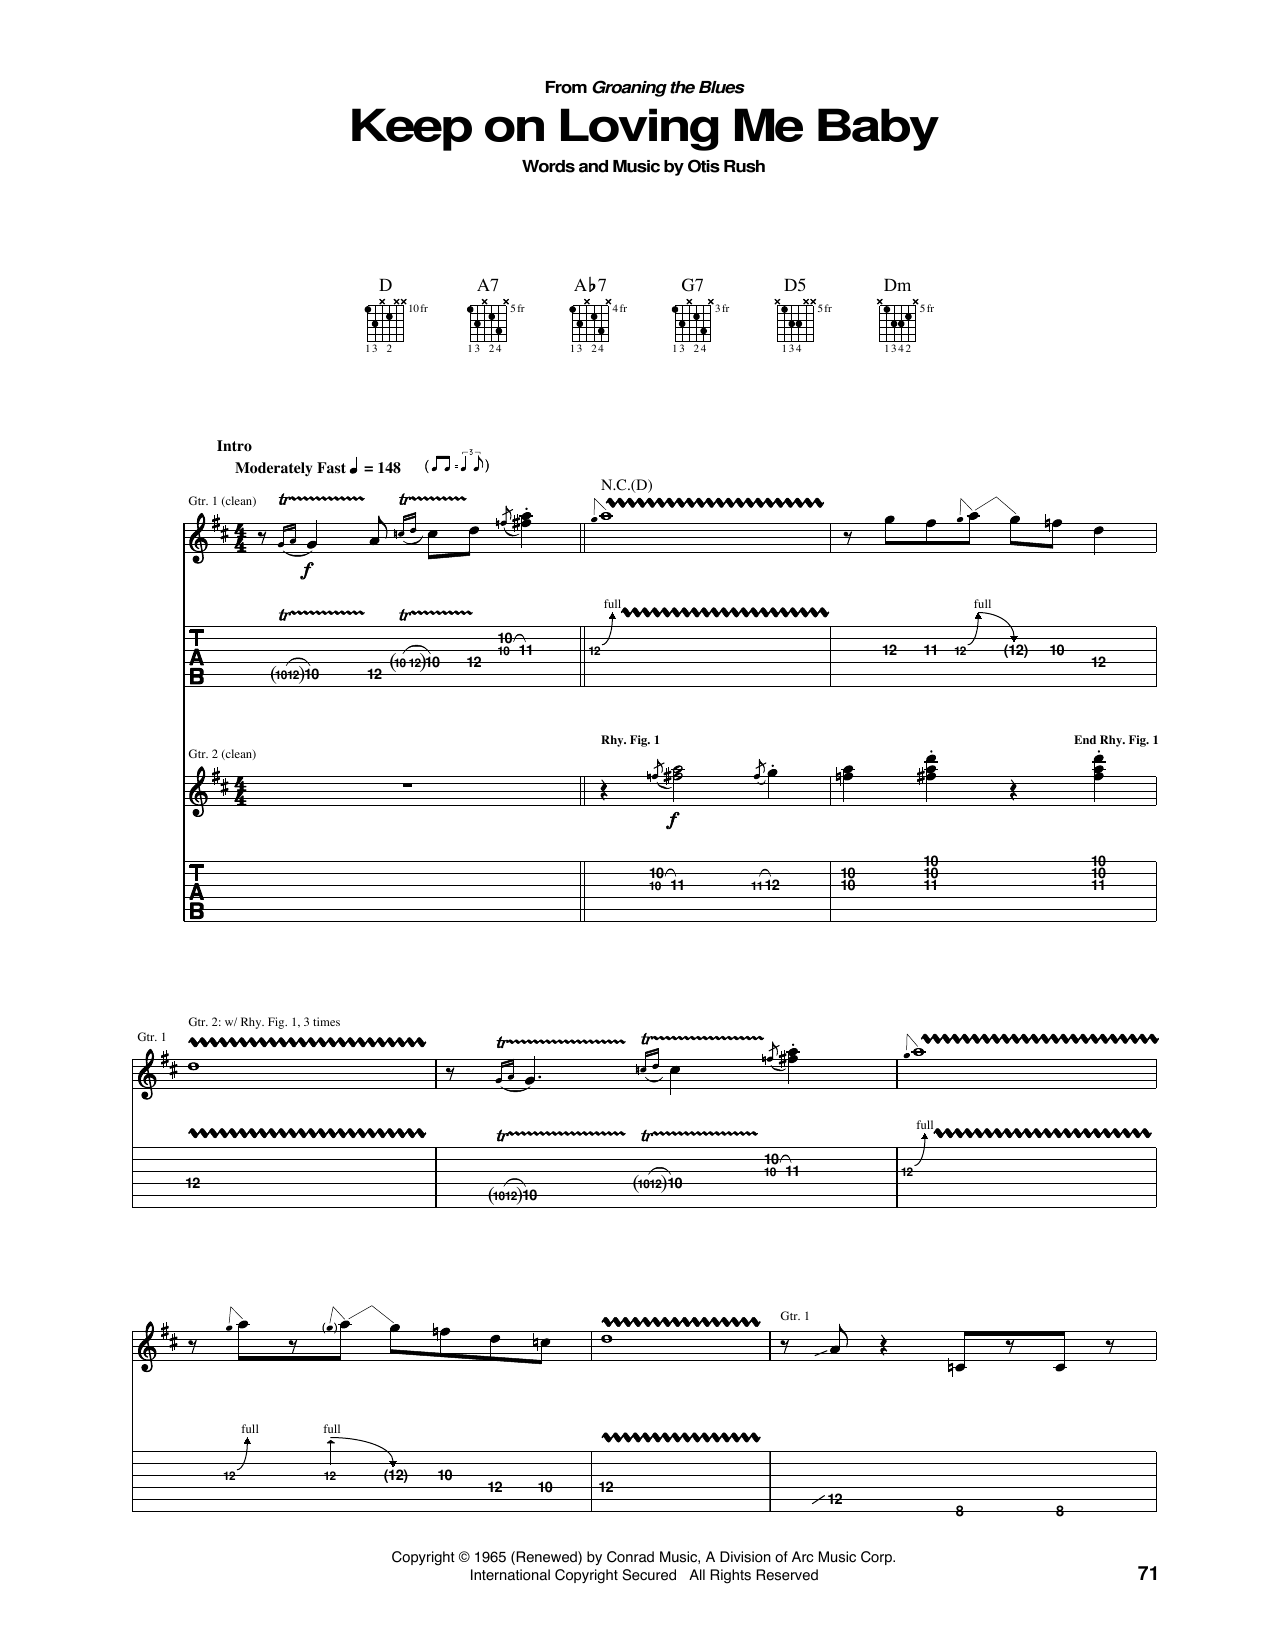 Otis Rush Keep On Loving Me Baby Sheet Music Notes & Chords for Guitar Tab - Download or Print PDF